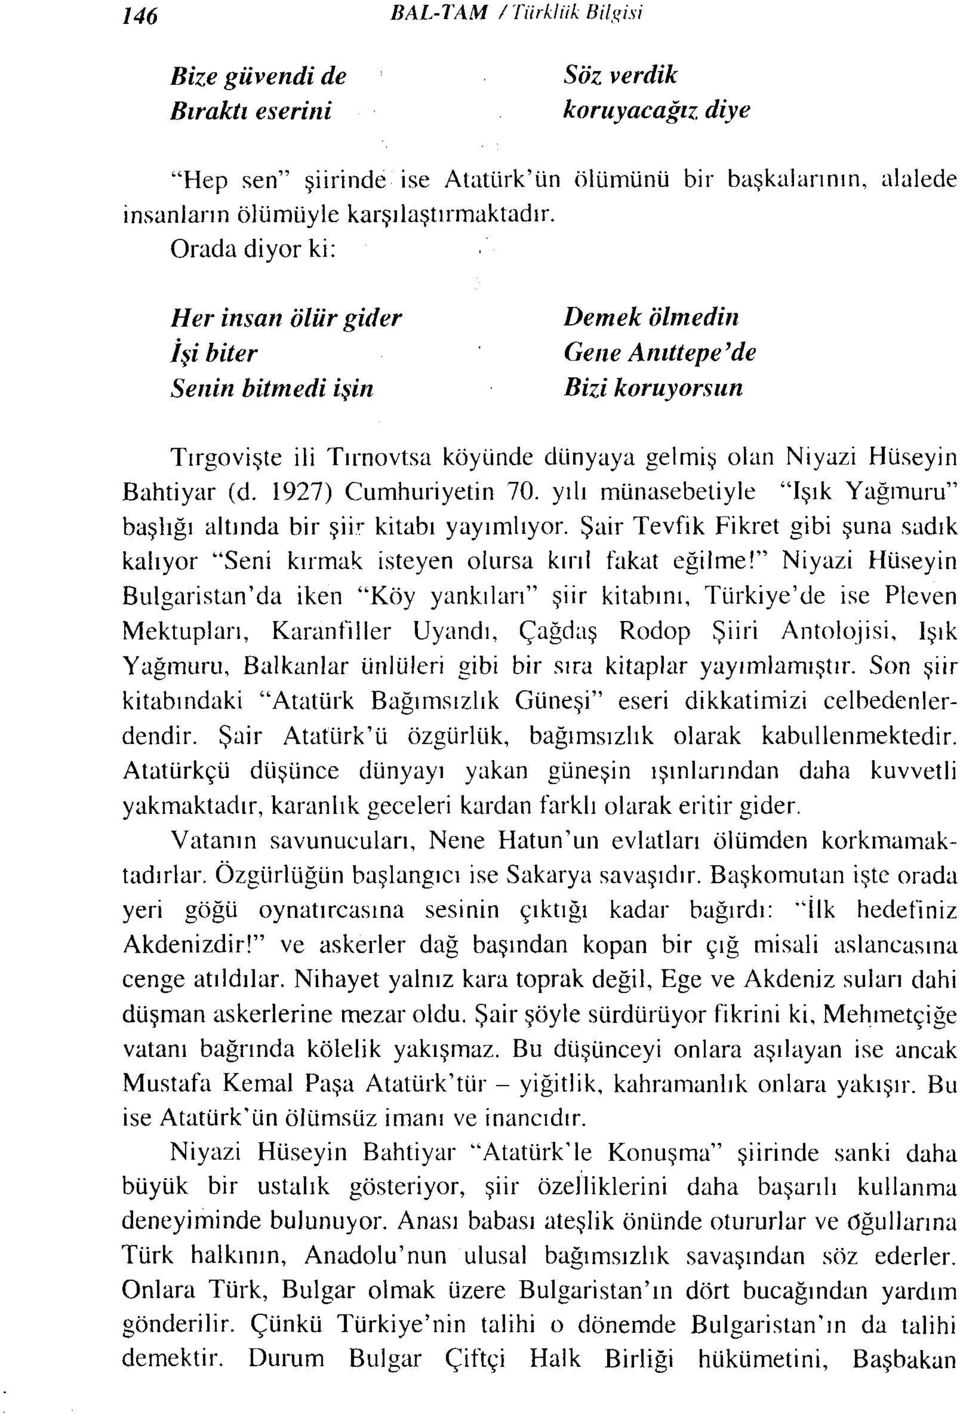 Niyazi Hüseyin Bahriyar (d. 1927) Cumhuriyetin 70. yılı münasebetiyle "Işık Yağmuru" başlığı altında bir şii,' kitabı yayımlıyor.